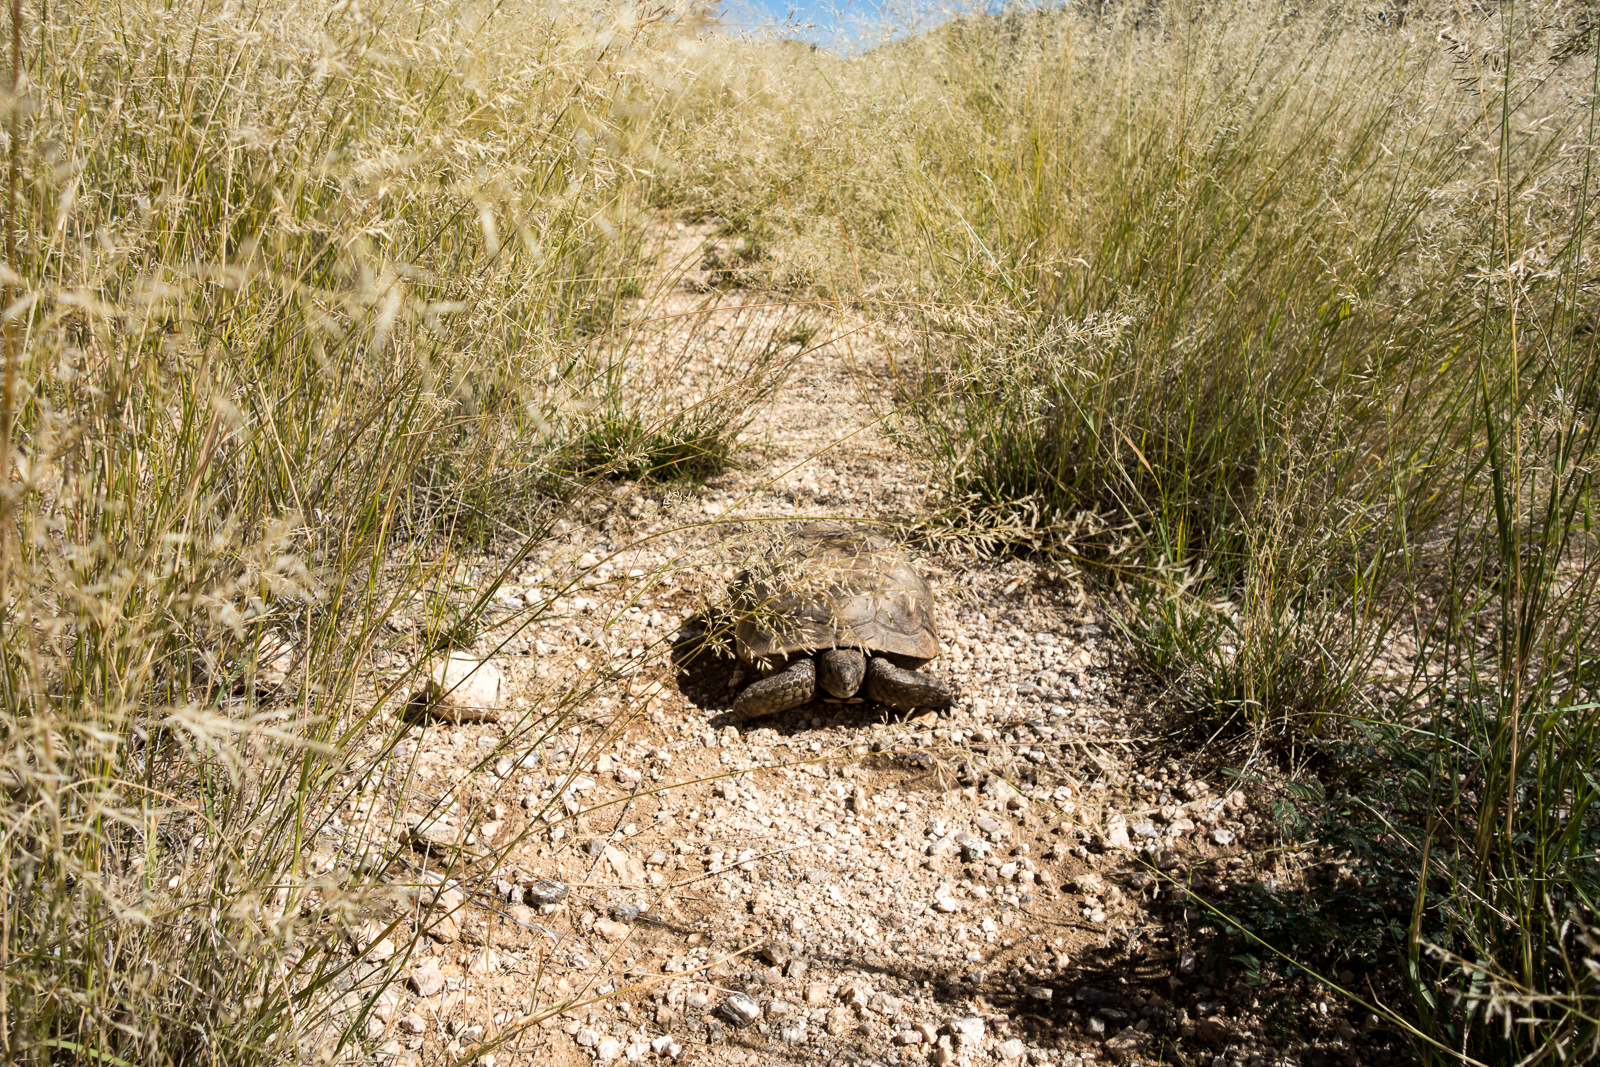 Desert Tortoise using FR4445 above Agua Caliente Canyon. October 2015.